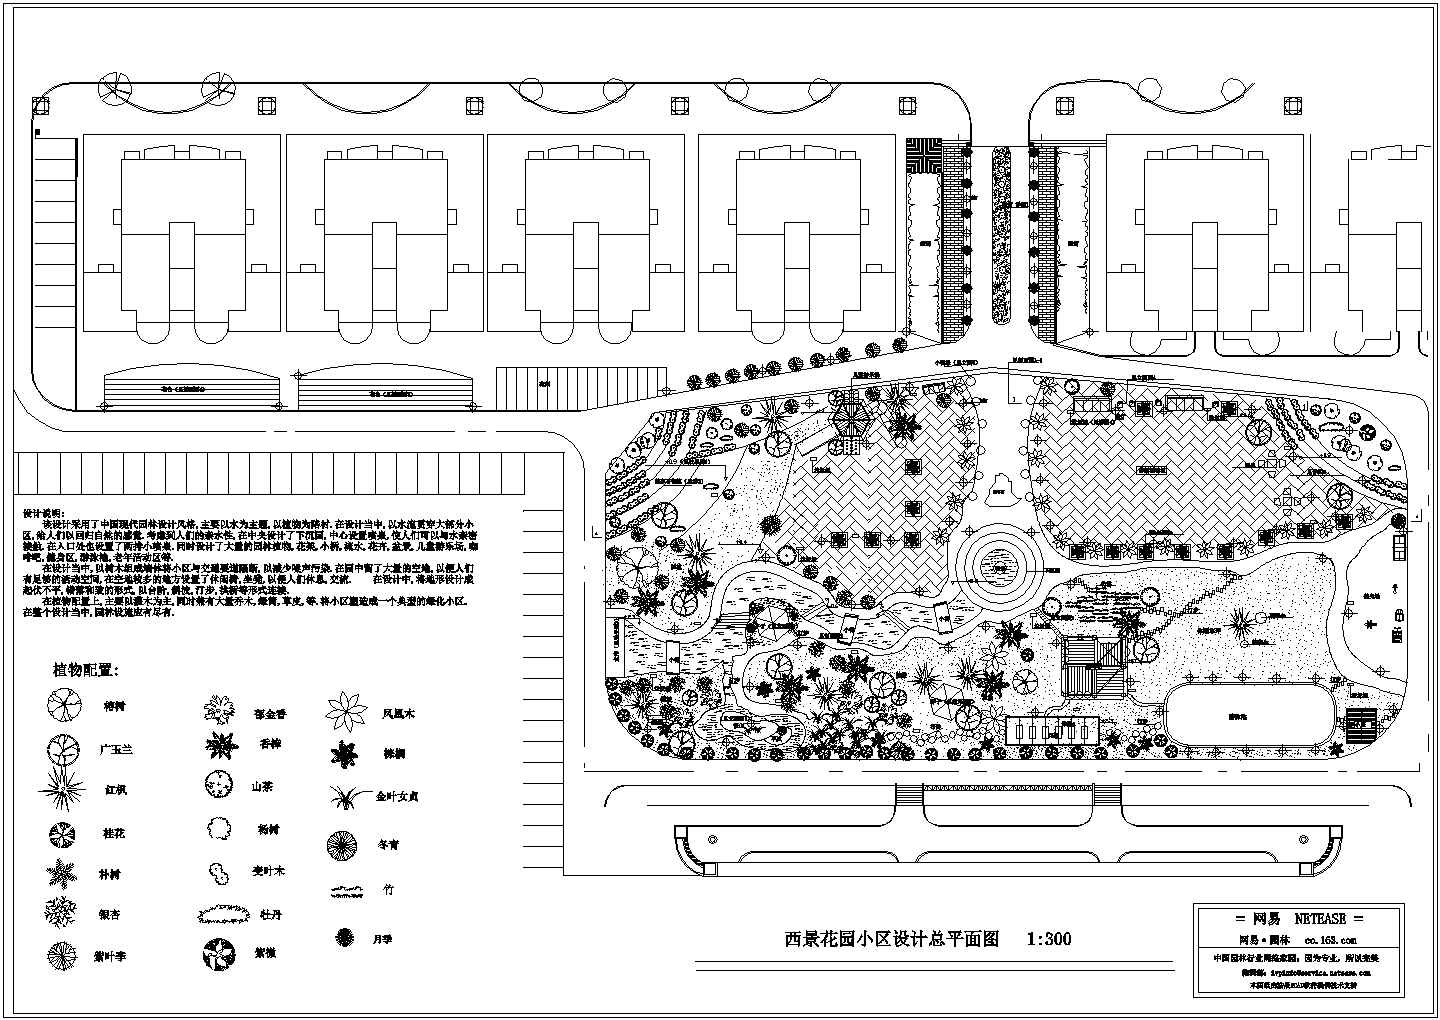 西景花园小区环境设计施工图